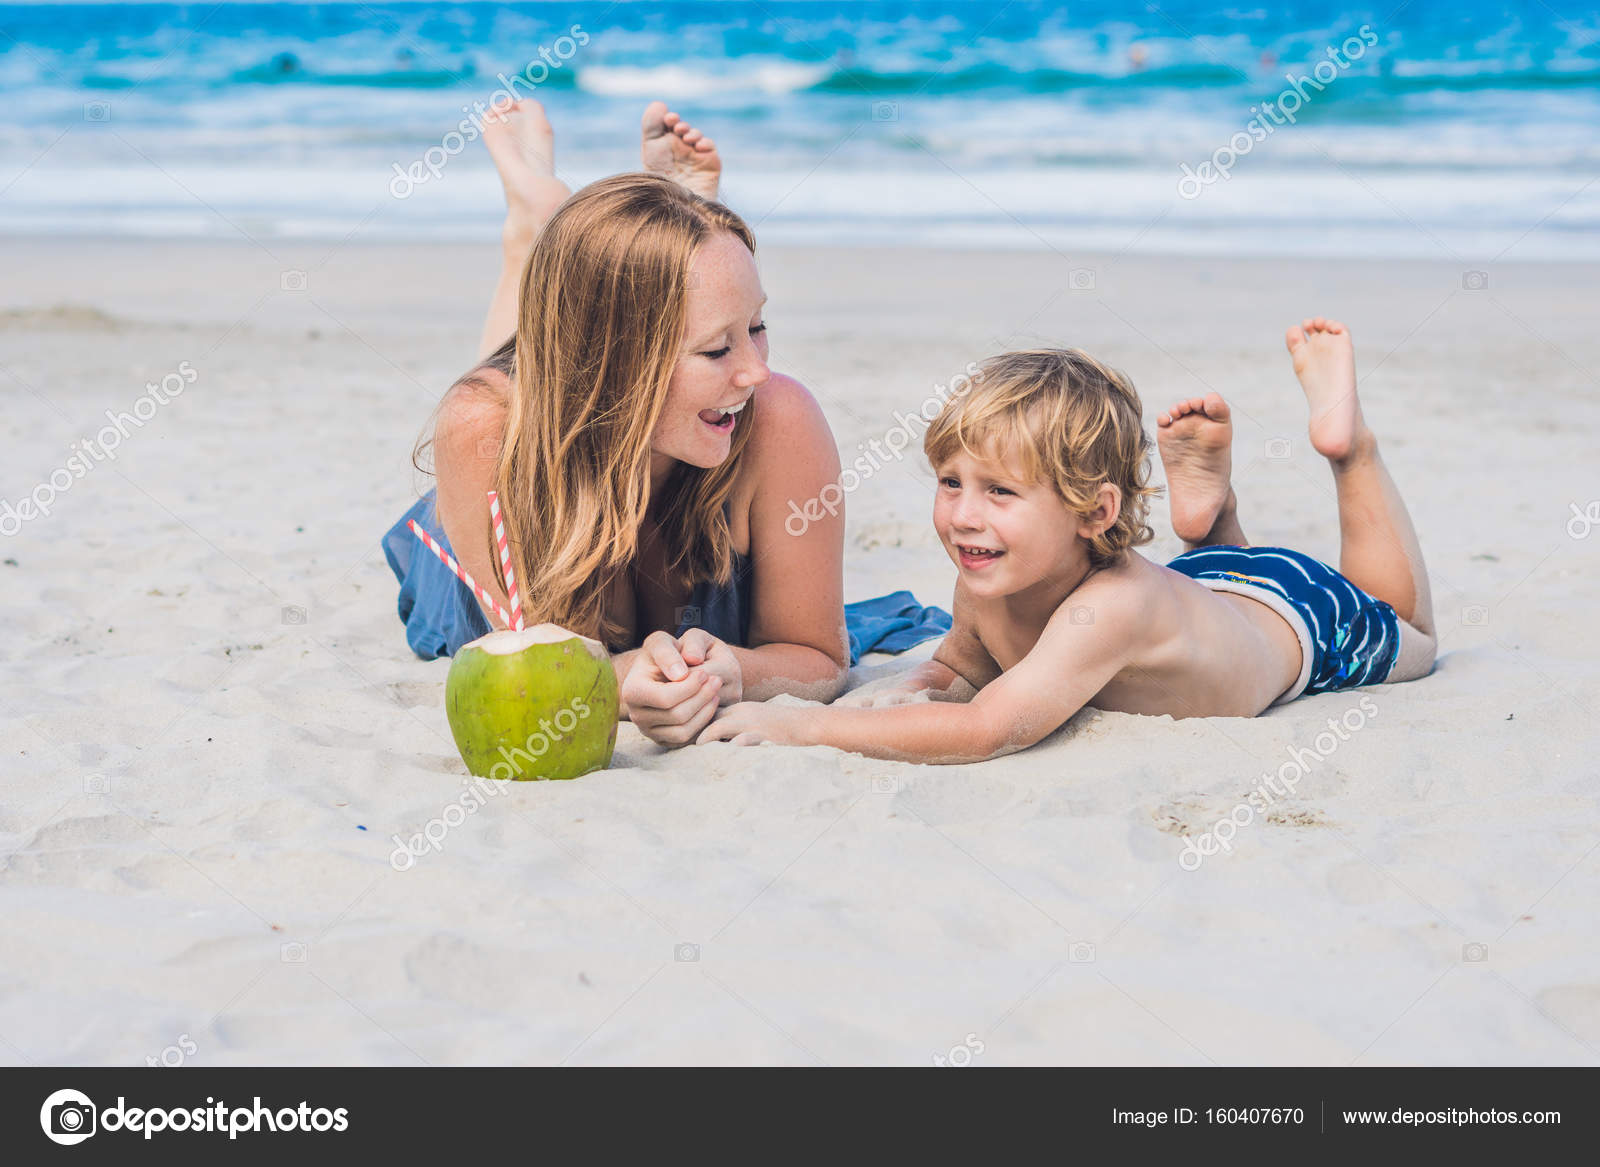 Mom and son enjoy the beach � Stock Photo � galitskaya #160407